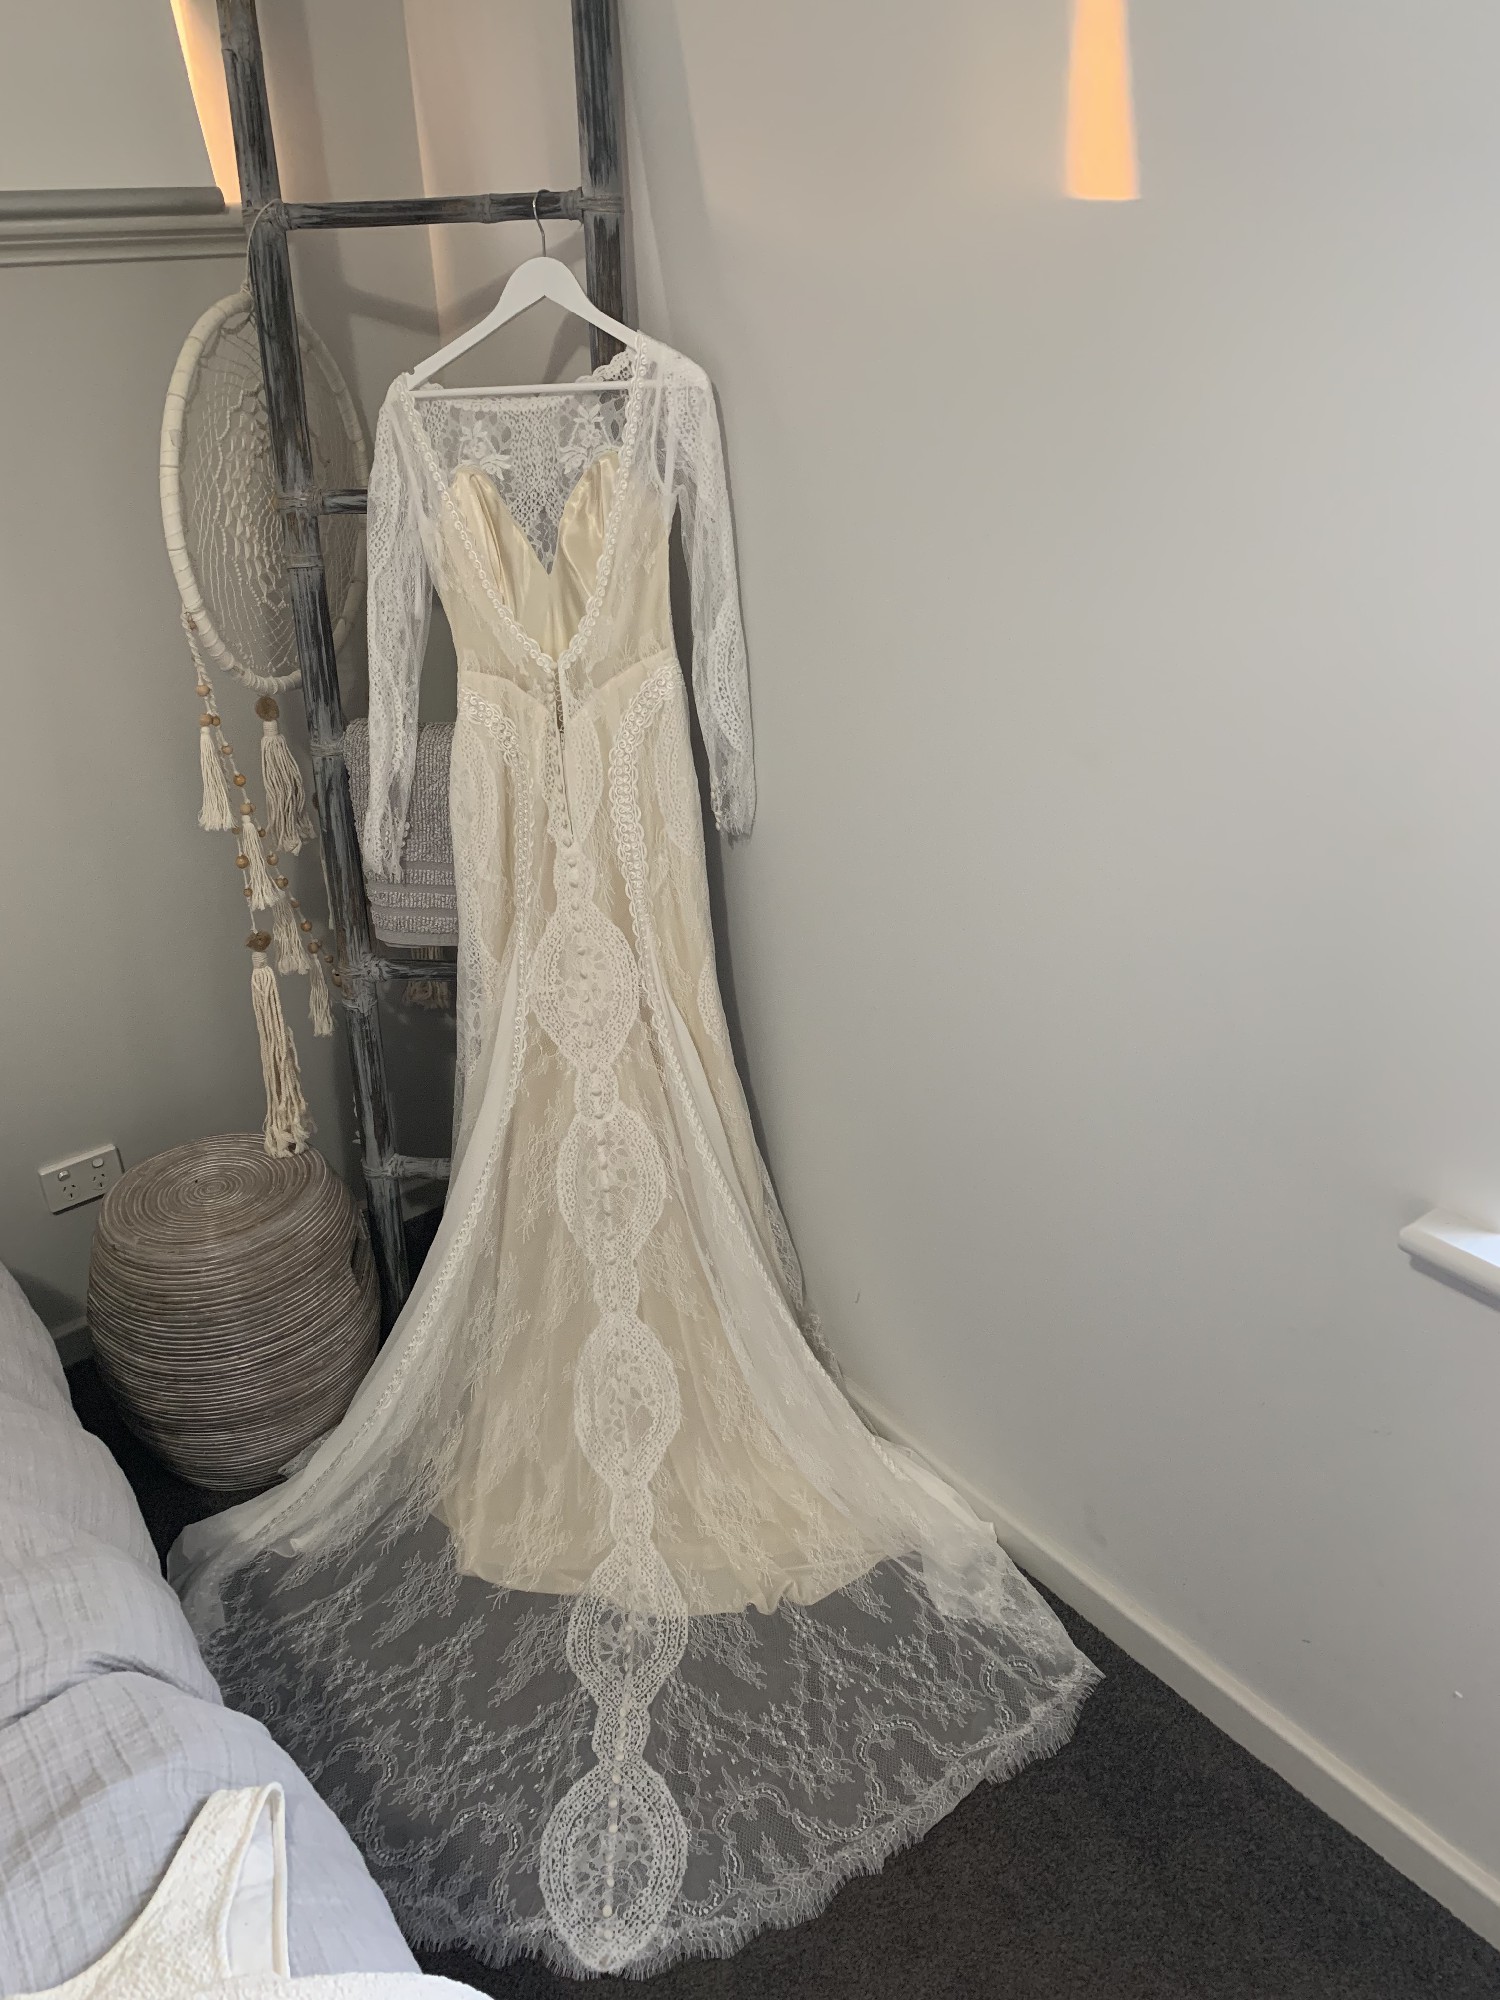 Wilderly Bride Marigold New Wedding Dress Save 50% - Stillwhite